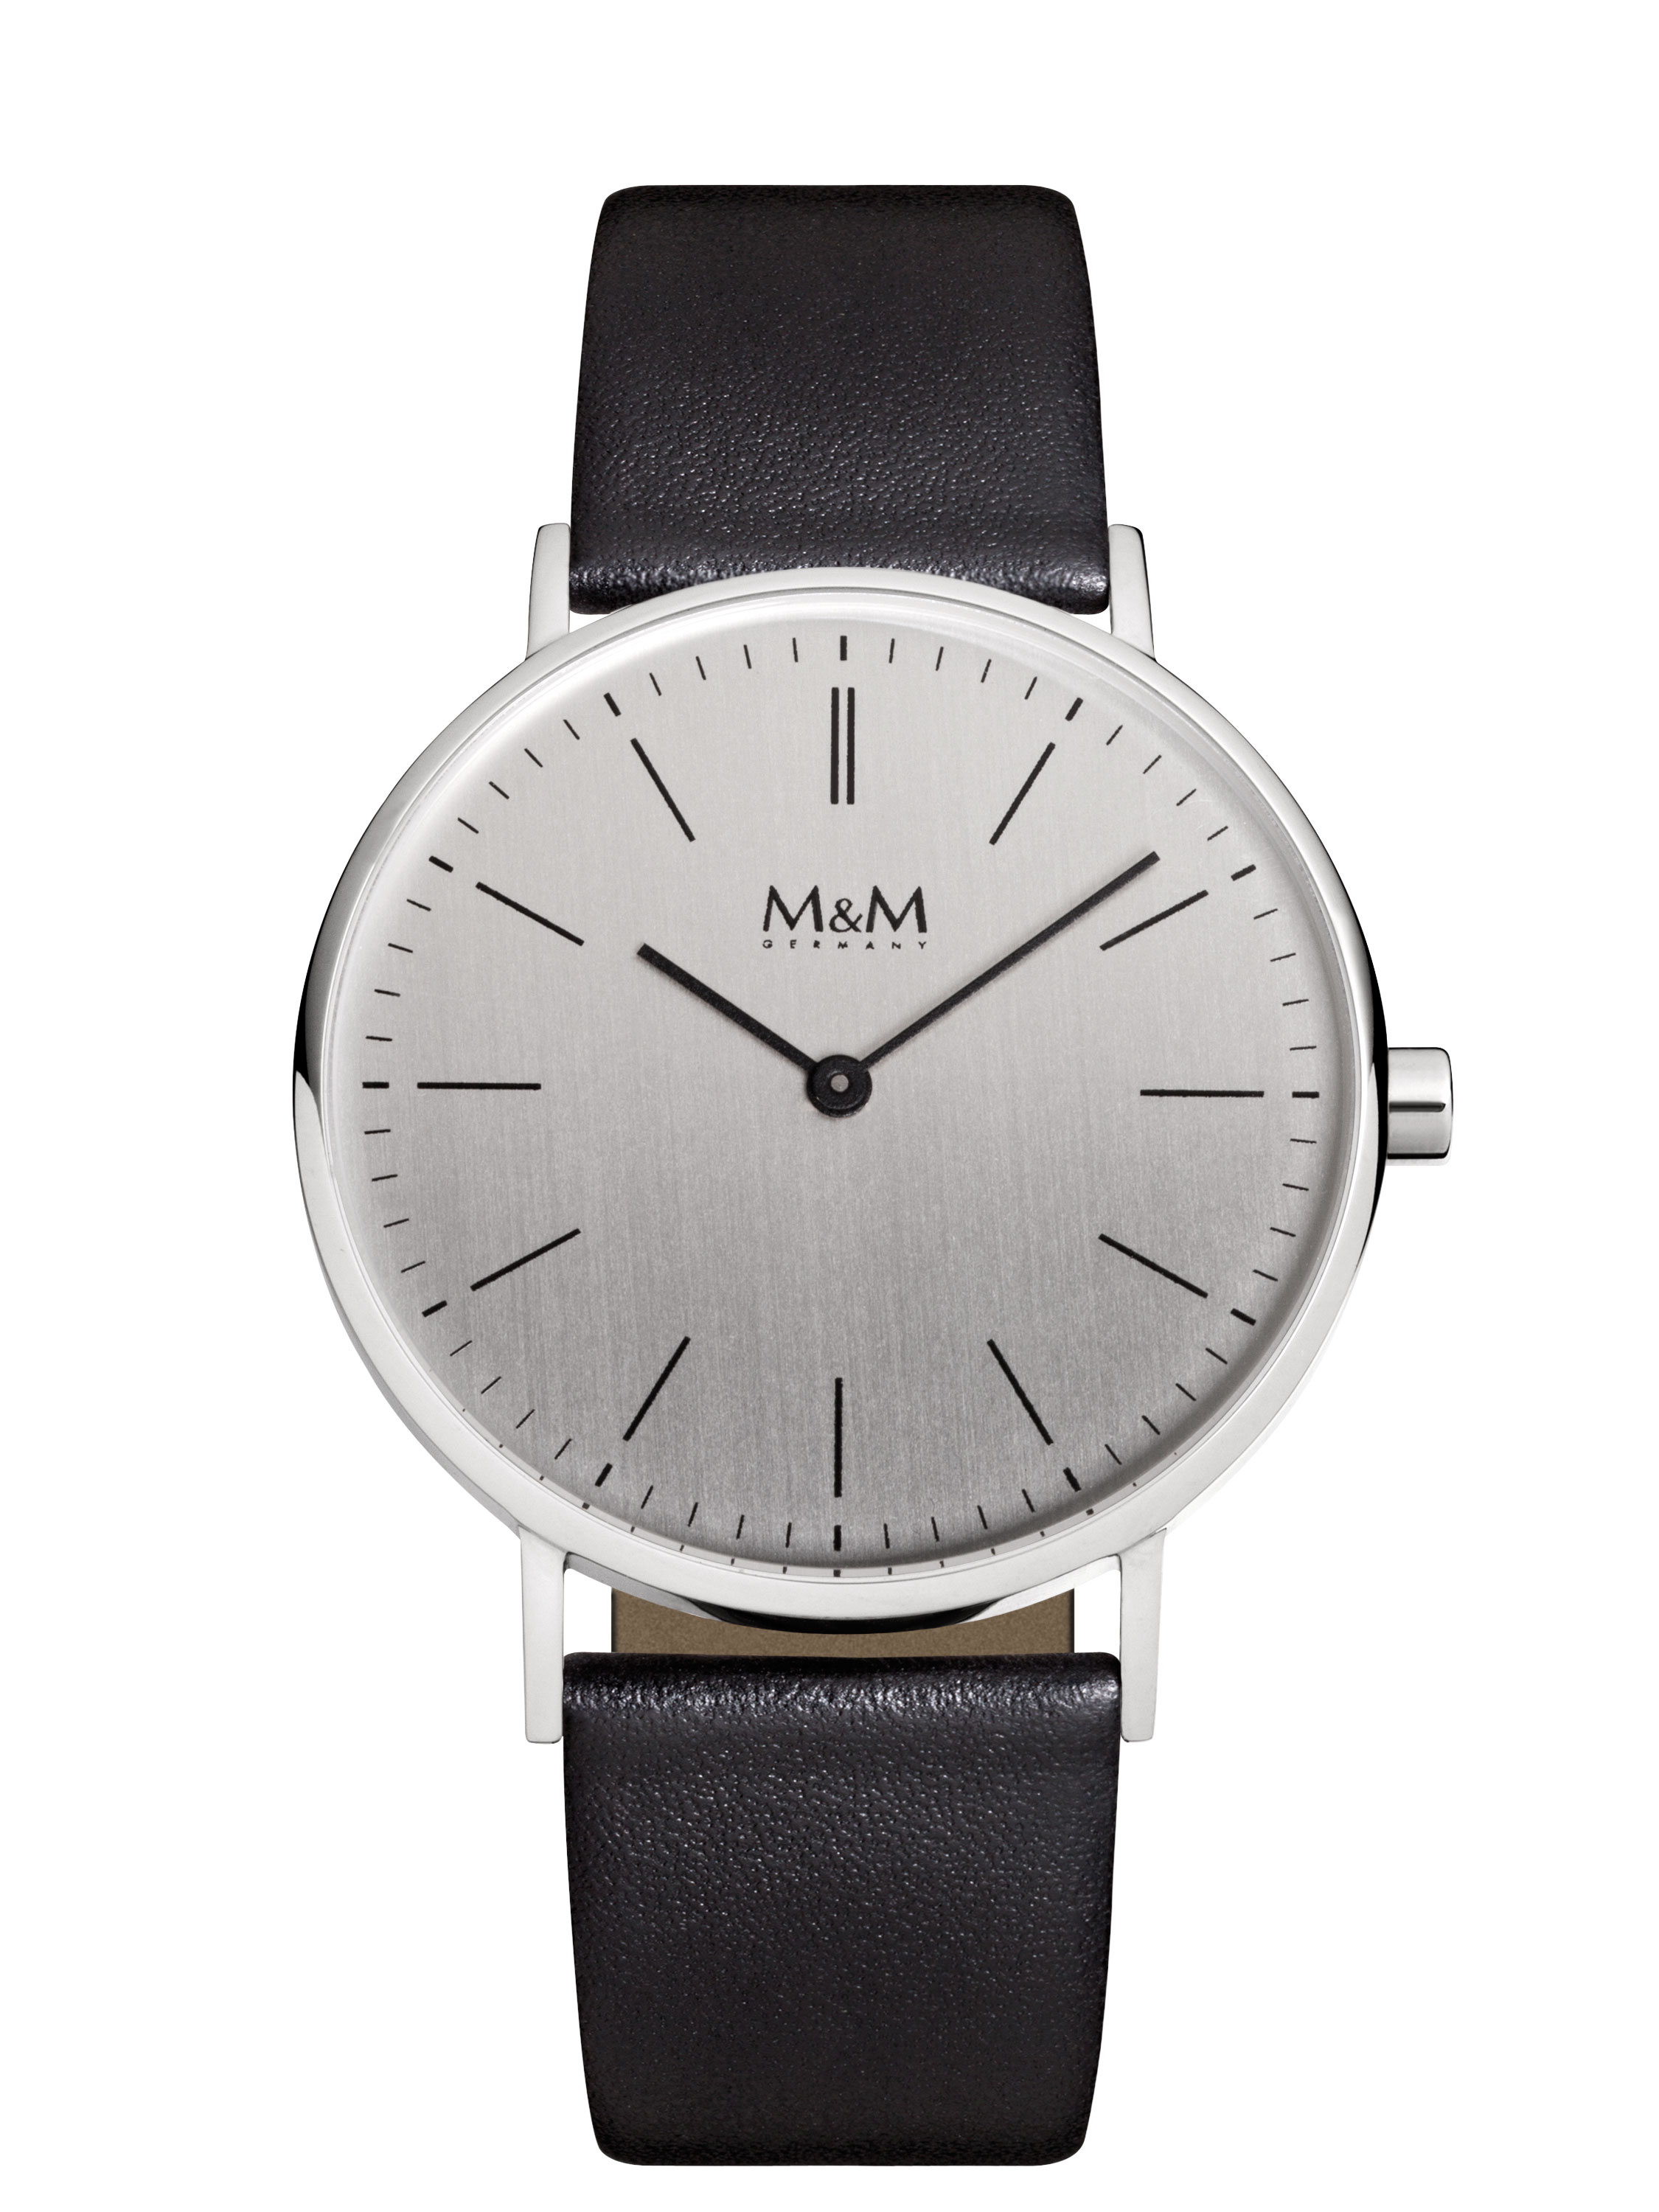 M&M Armbanduhr M11892-442 günstig kaufen bei Juwelierwelt.de © ★ Gratisversand ★ Paypal ★ trusted shops ★ 